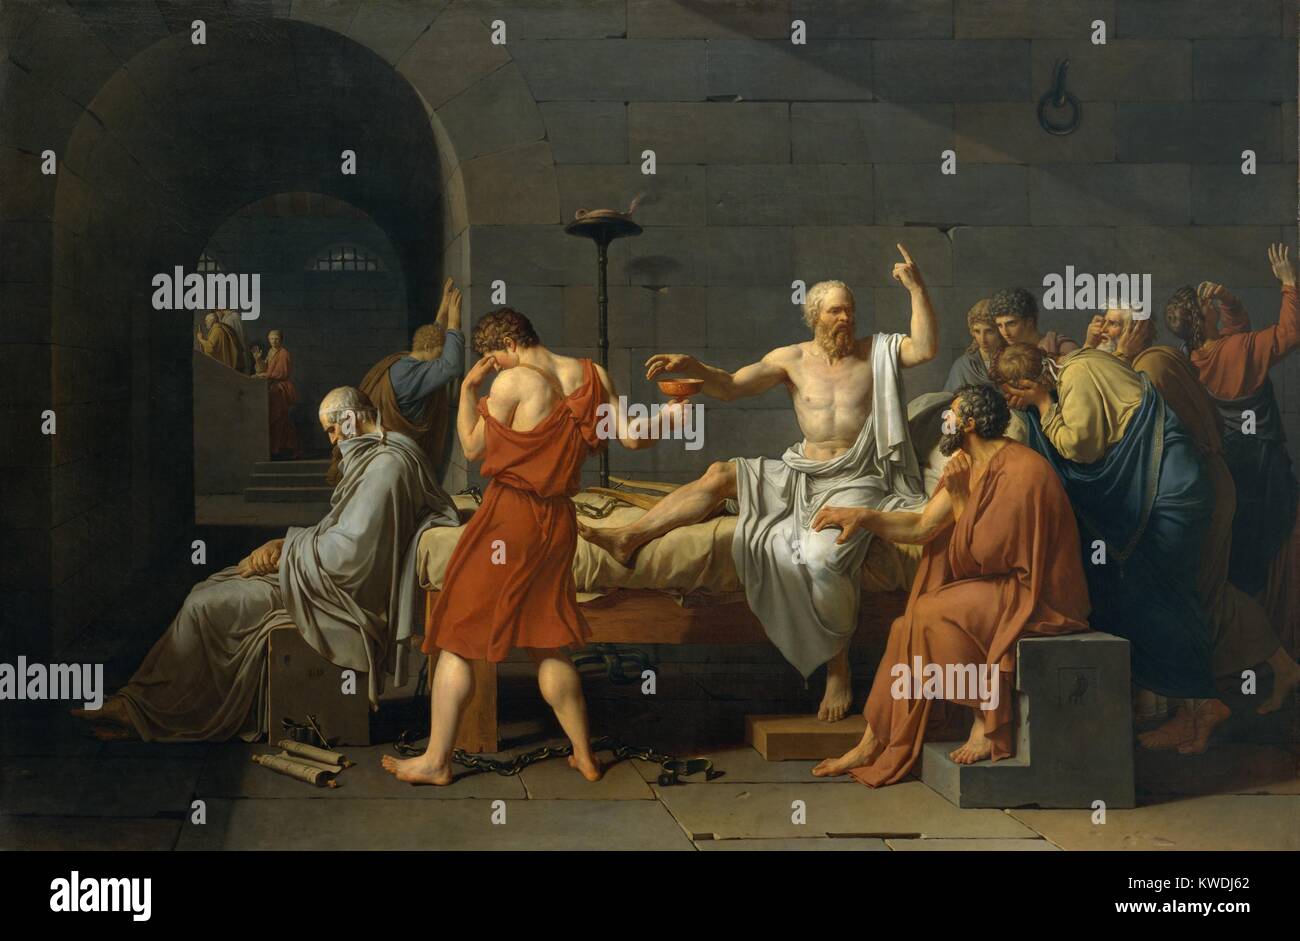 La mort de Socrate, par Jacques Louis David, 1787, la peinture néoclassique français, huile sur toile. Classique Grec philosophe Socrate à propos de boire la ciguë, le prix de l'entretien de ses croyances. La plupart de ses disciples sont en deuil, à l'exception de la Platon méditative assis sur la gauche. Apollodore, est à l'origine de Platon, appuyé contre le mur alors que Criton Socratess BSLOC saisit la cuisse ( 2017 9 145) Banque D'Images